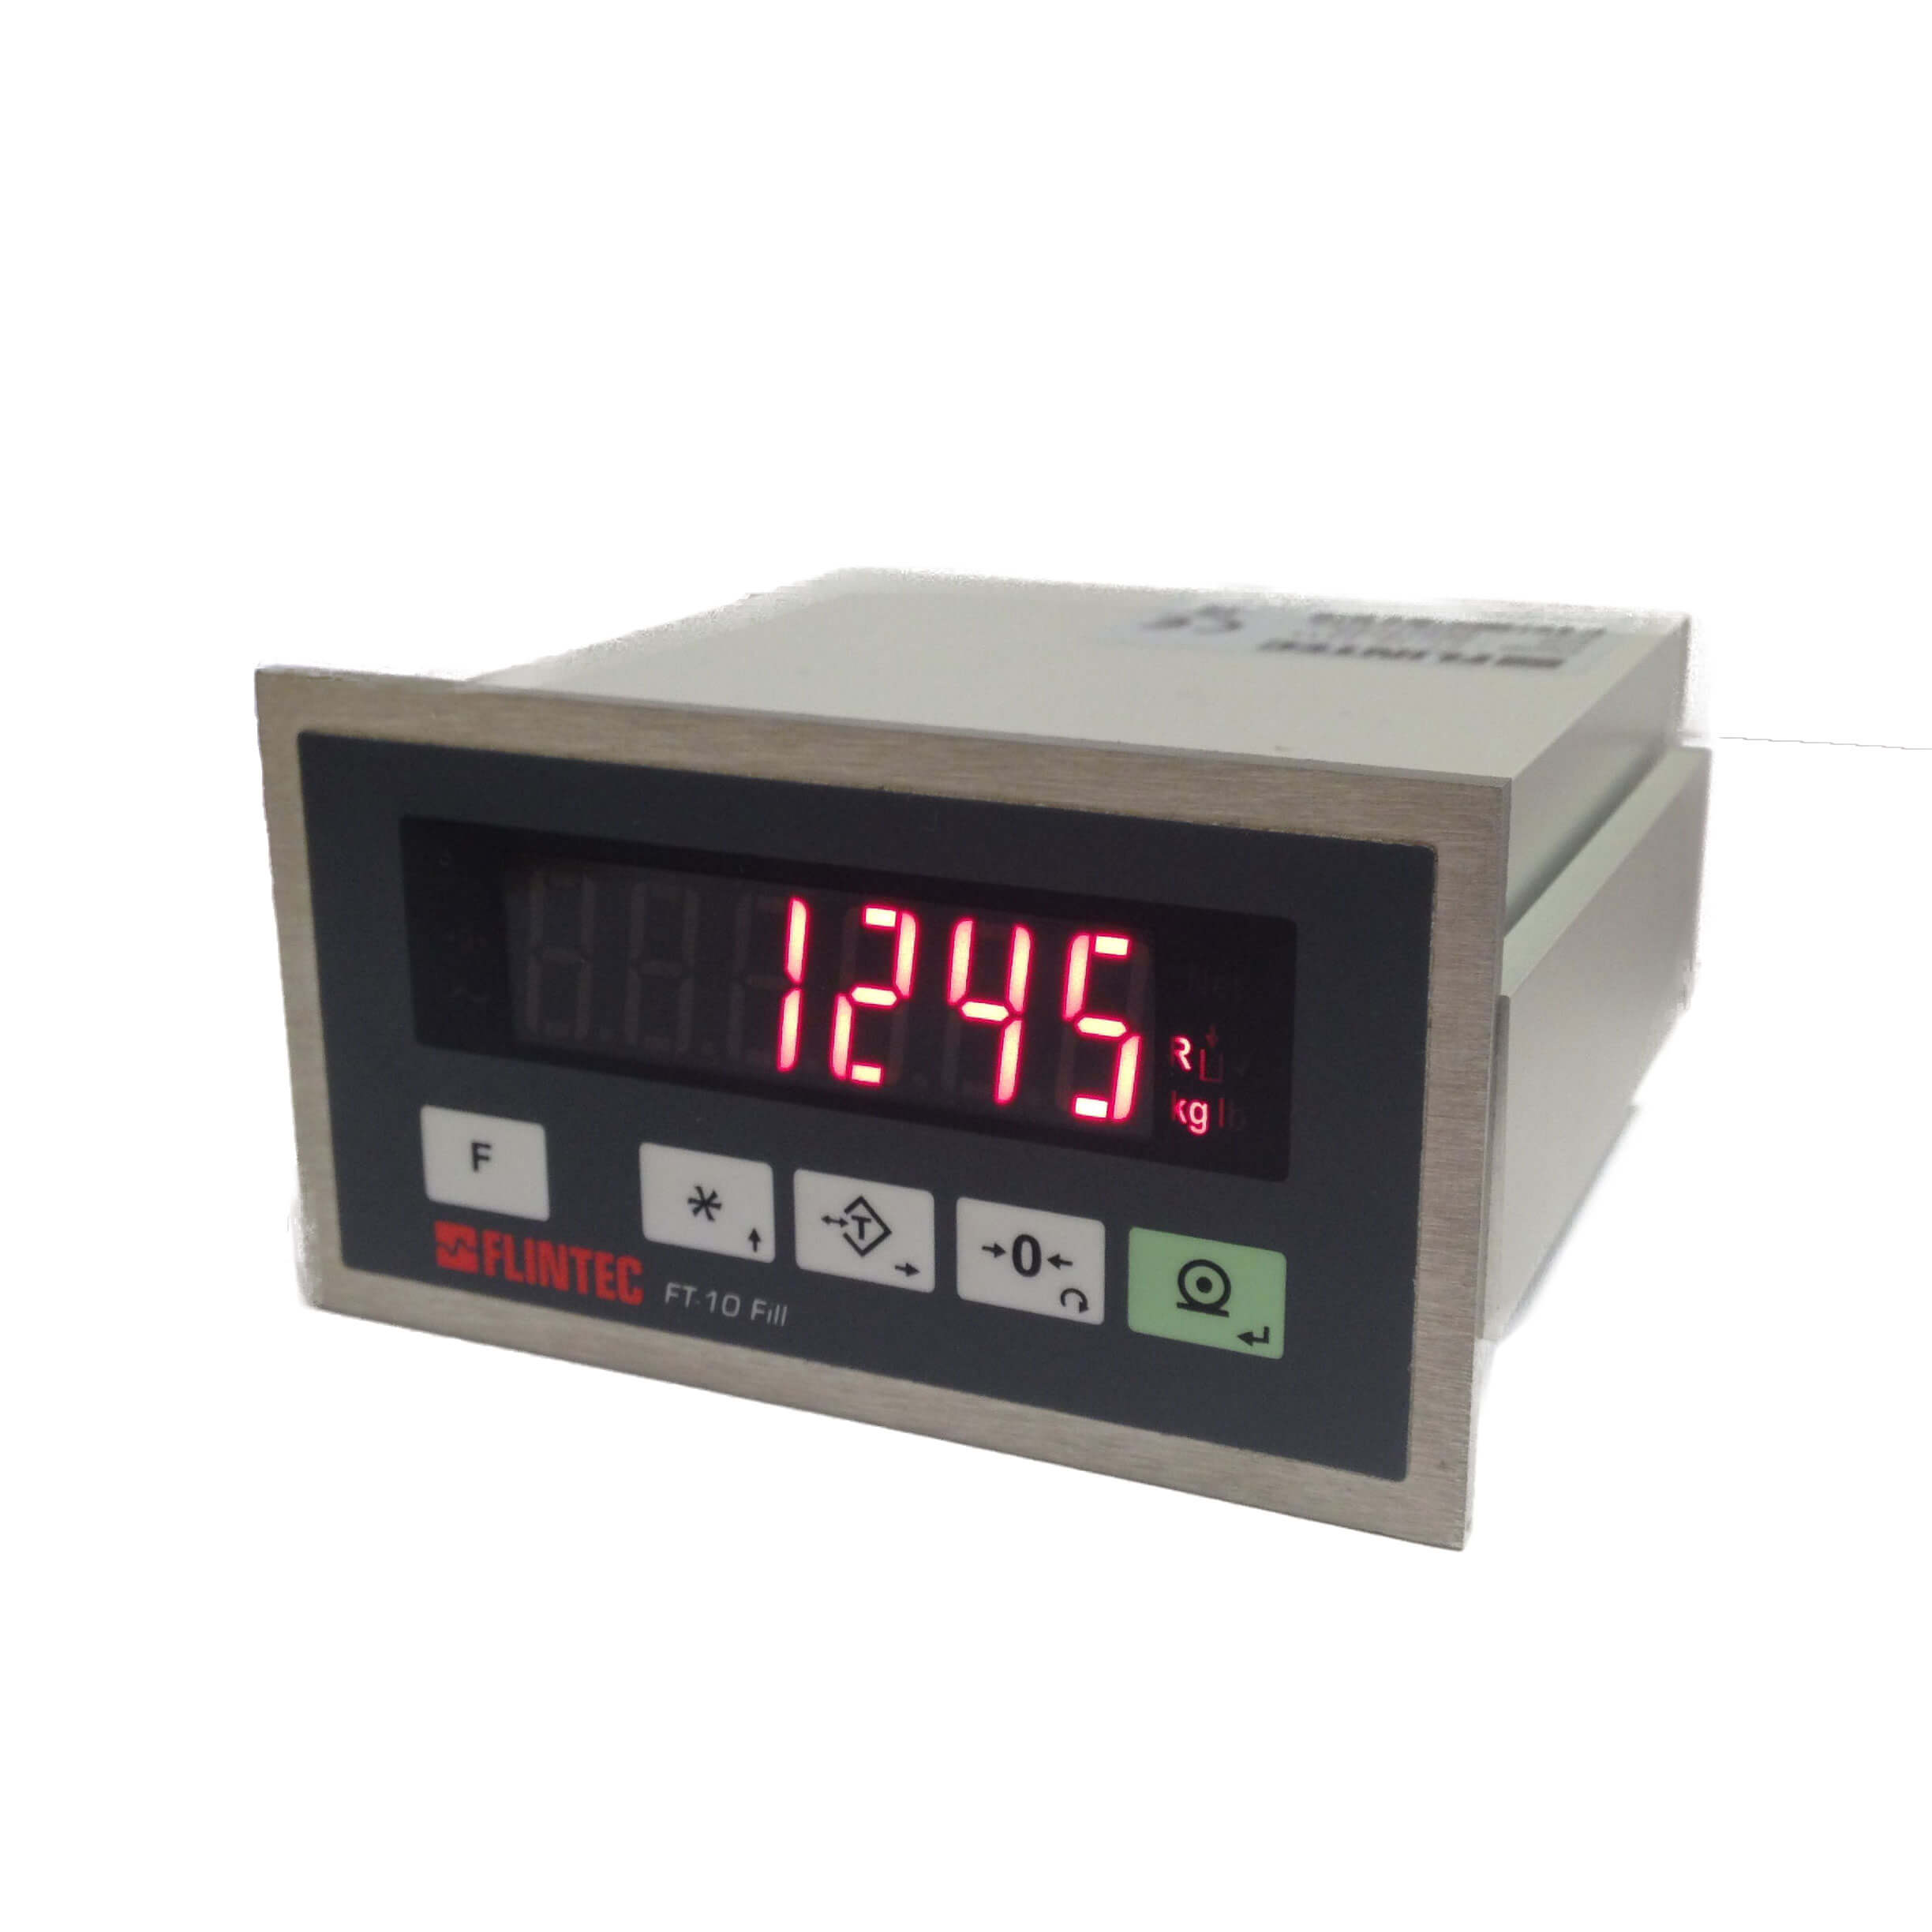 FT-10 fill gewichtsindicator (voor afvullen en doseren) Image